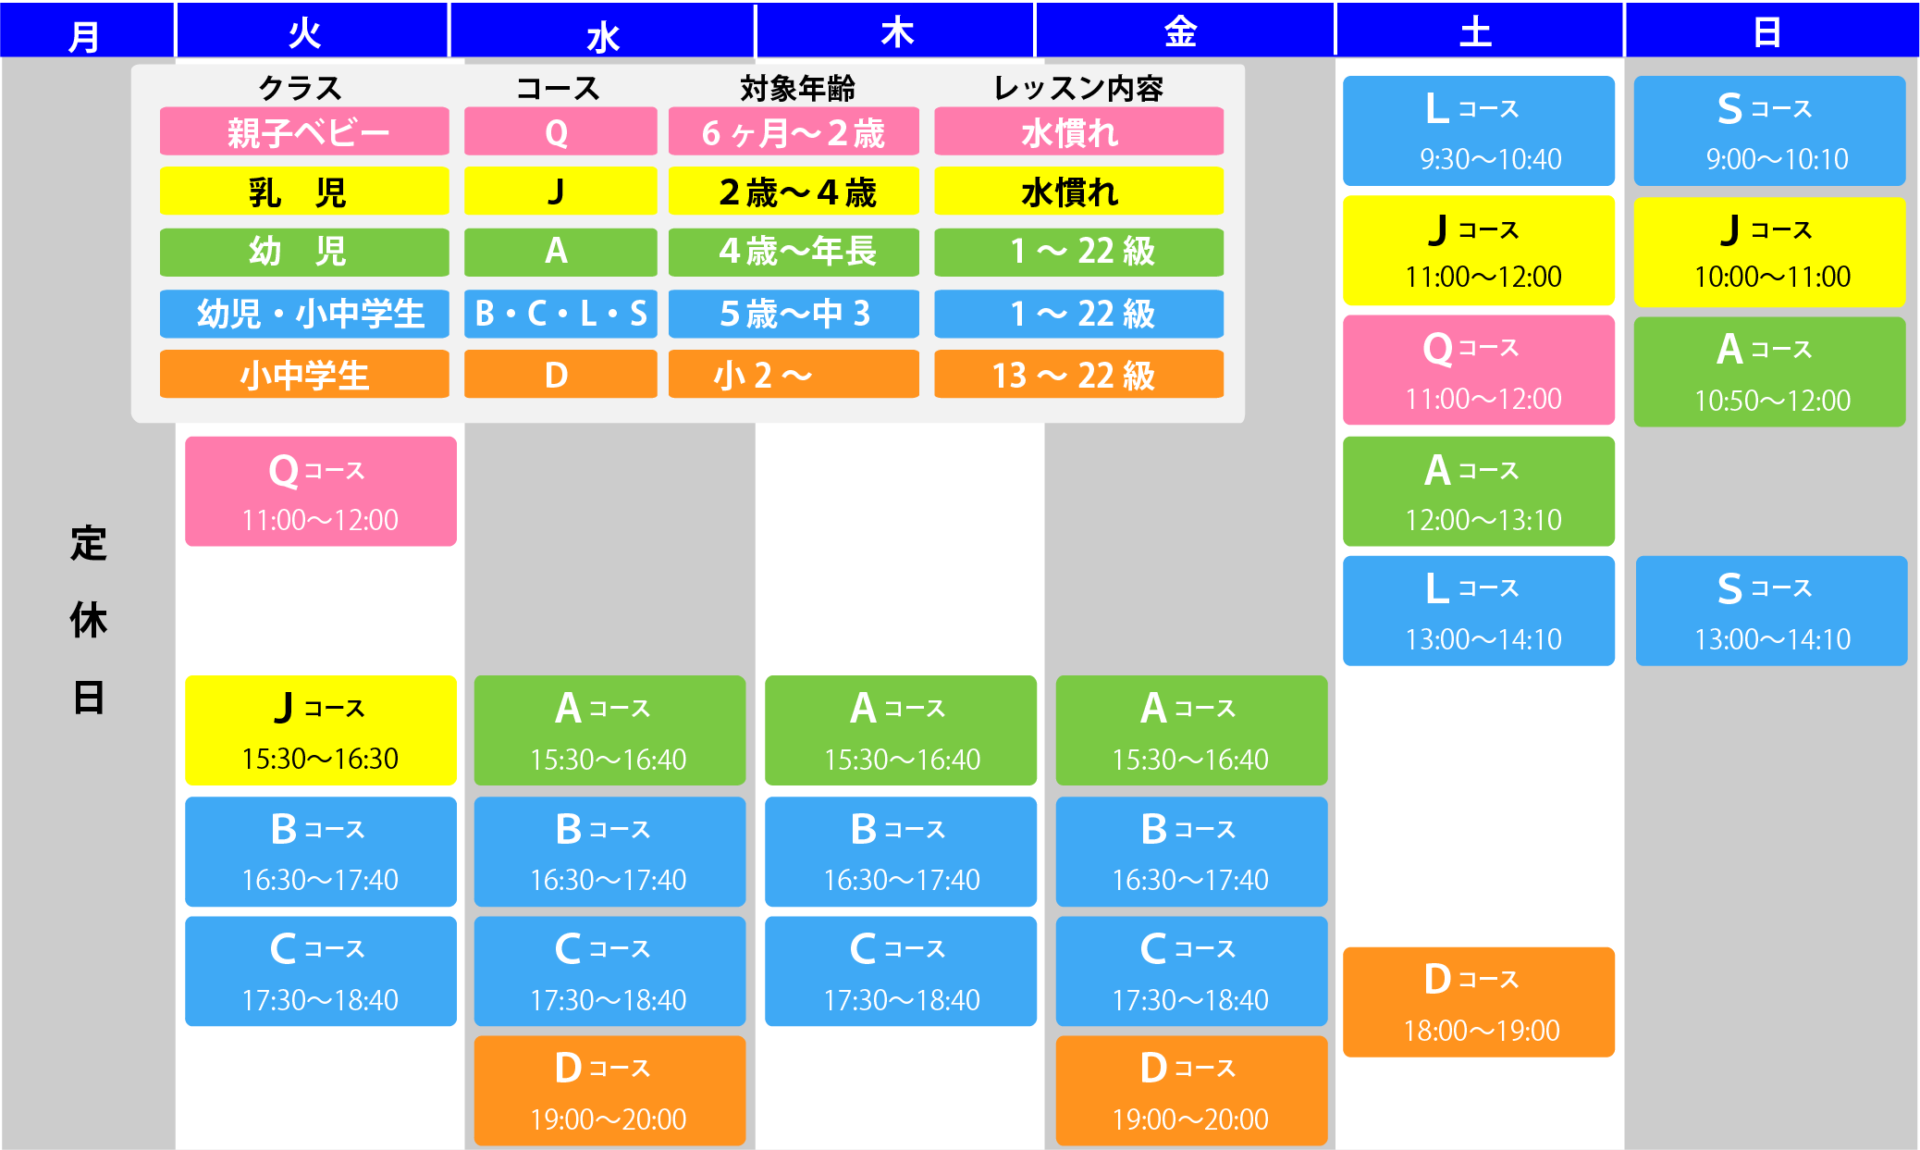 スポーツプラザ山新常陸太田ジュニアスイミングスケジュール表